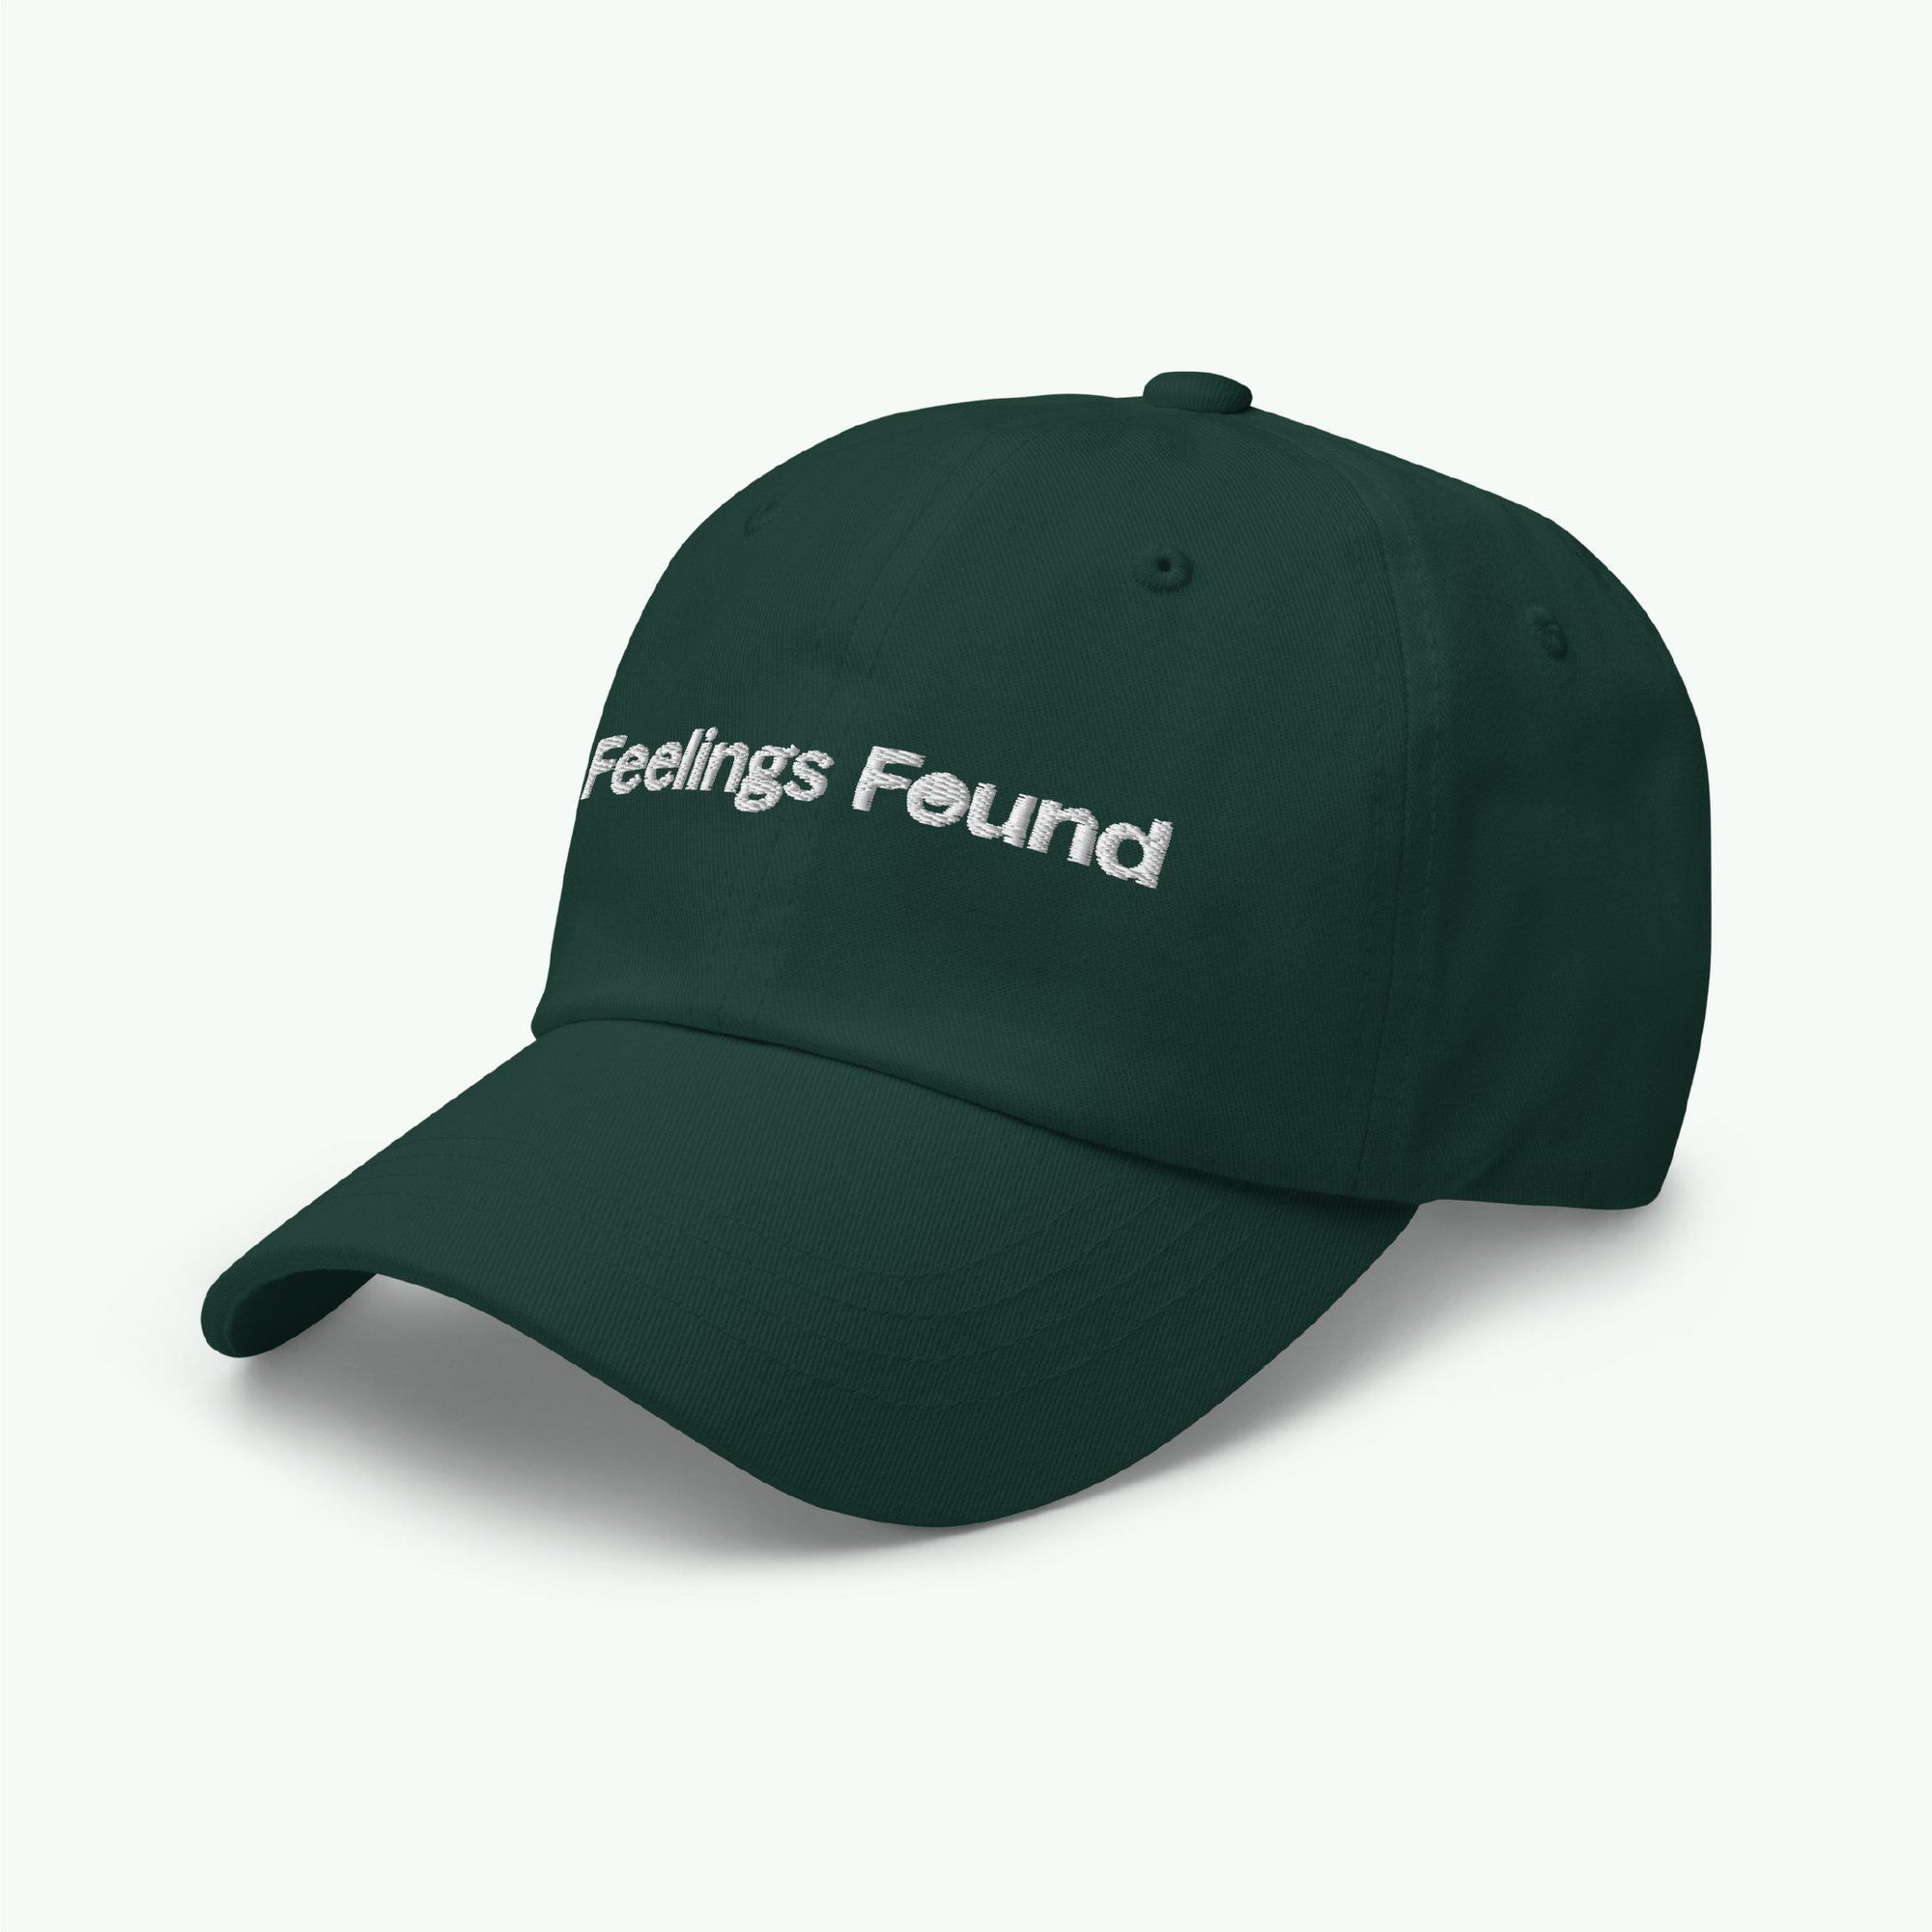 Feelings Found Hat